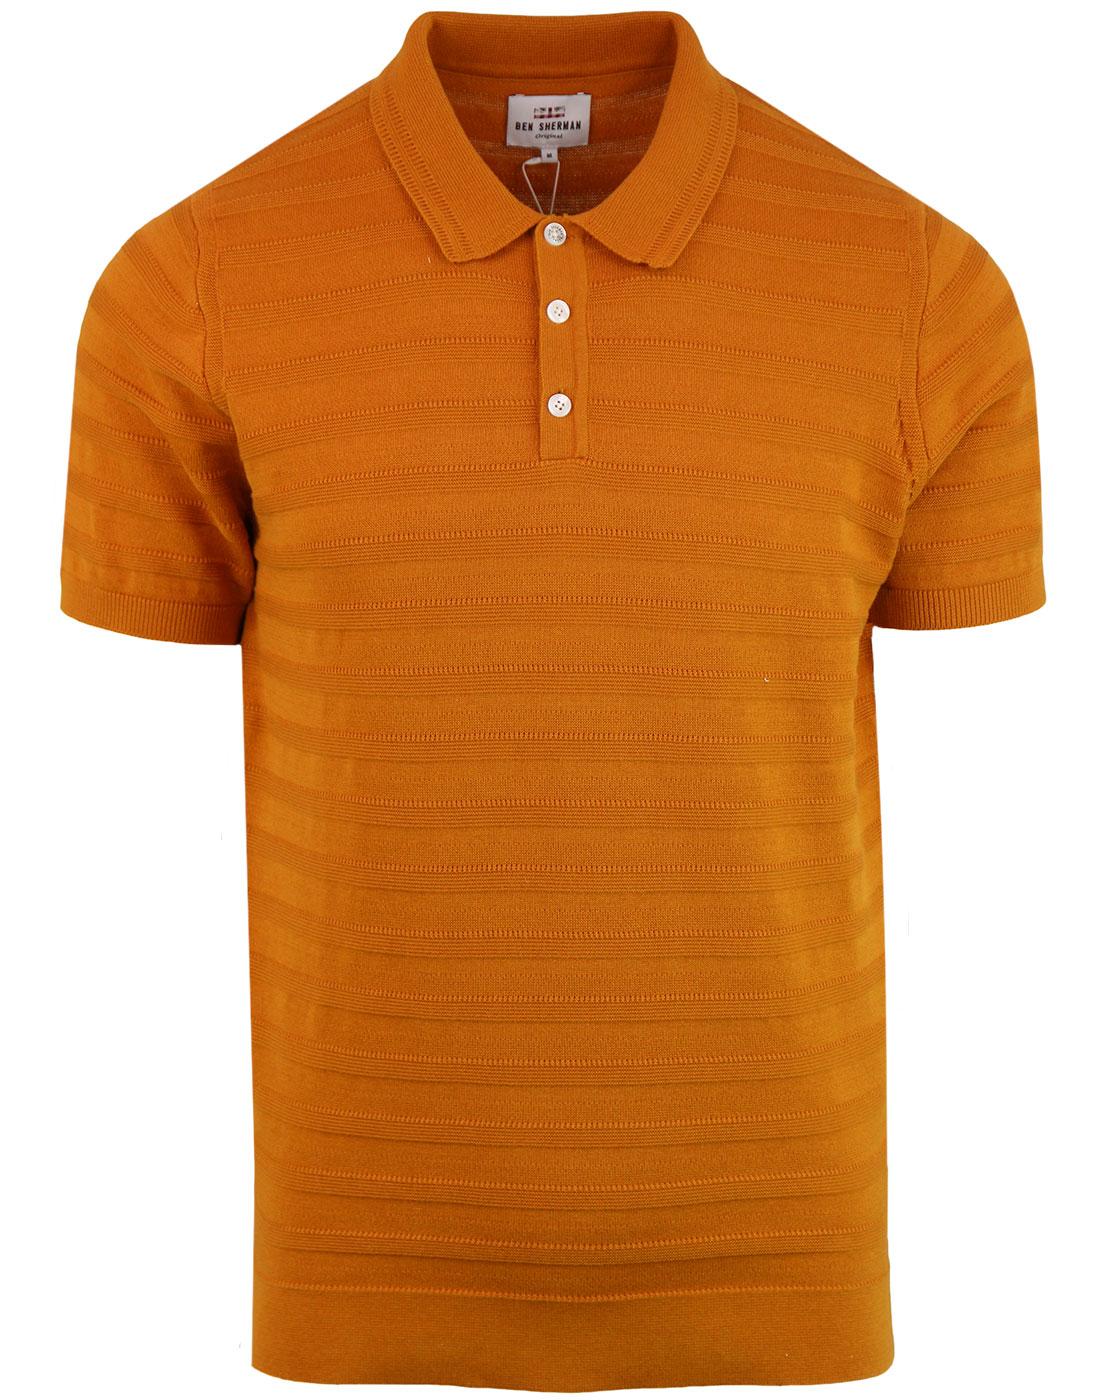 BEN SHERMAN 60s Mod Texture Stripe Knit Polo Shirt